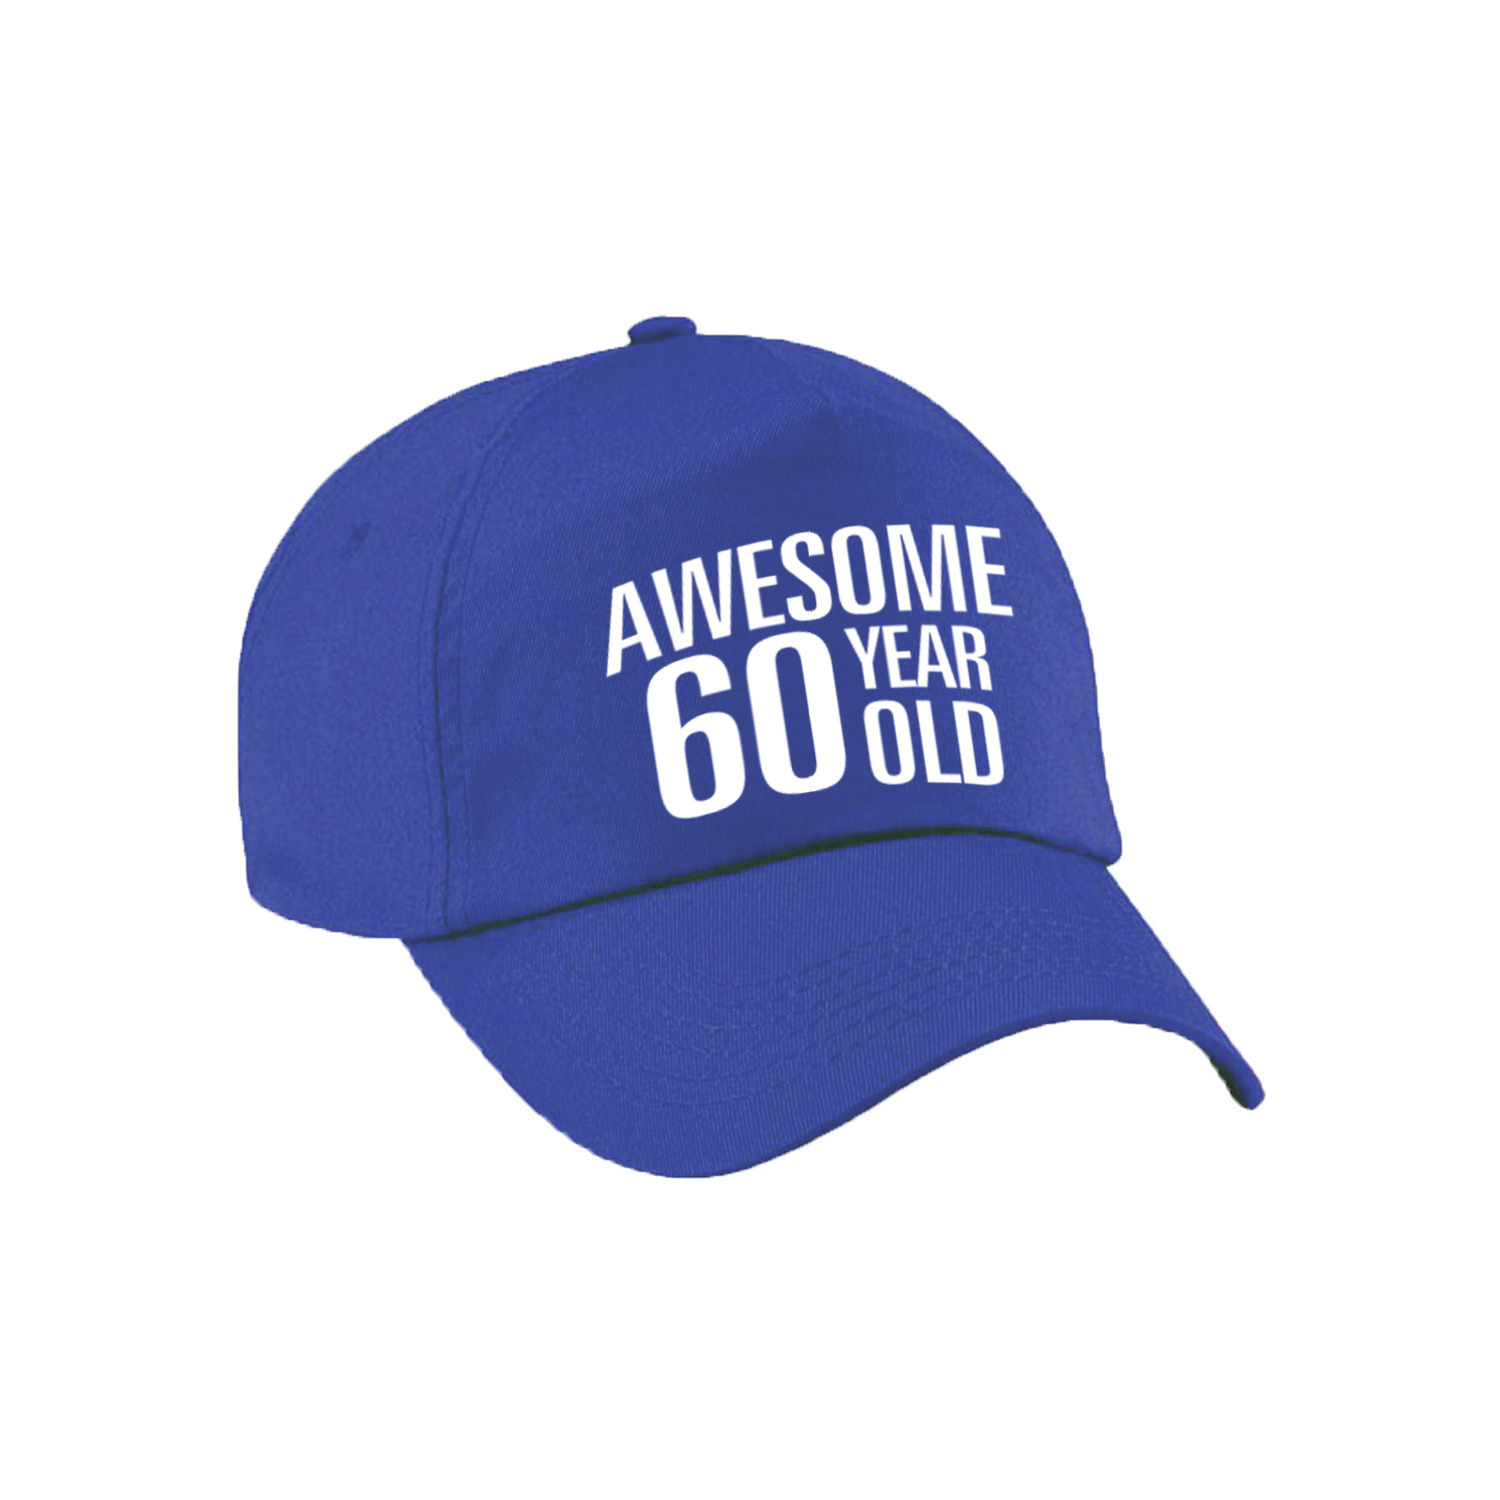 Awesome 60 year old verjaardag pet / cap blauw voor dames en heren